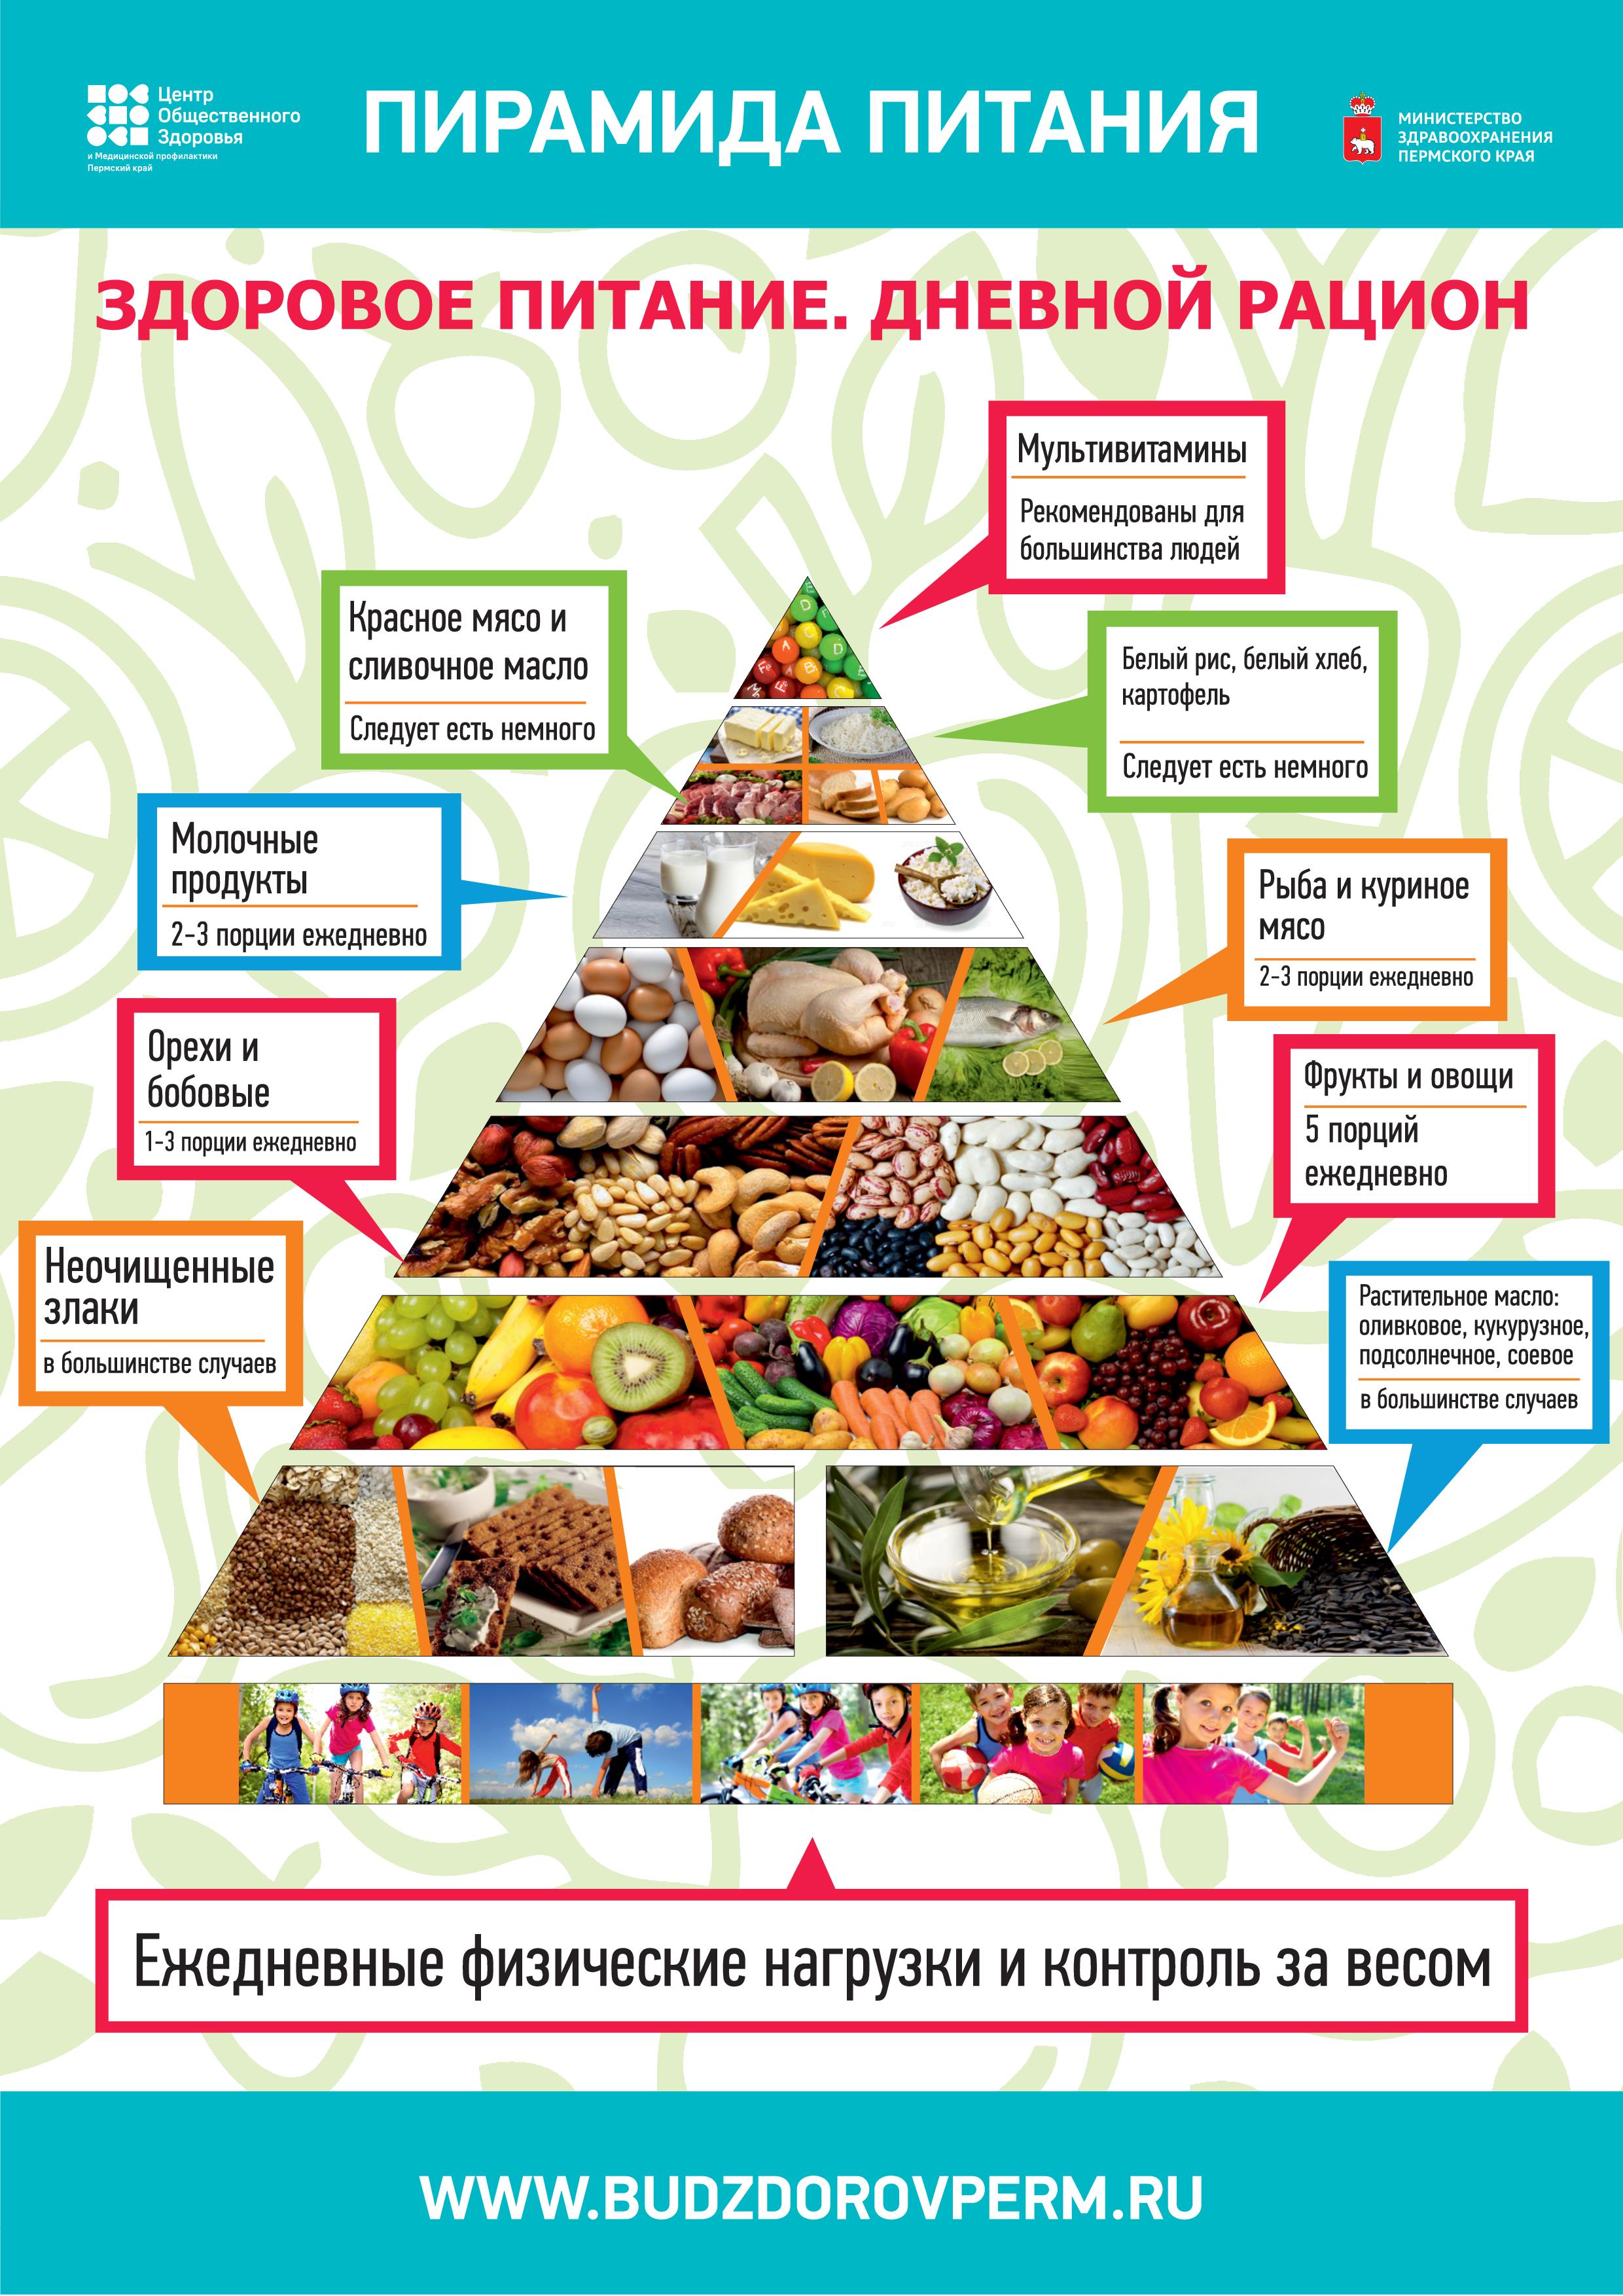 Компании сбалансированного питания. Пищевая пирамида питания дневной рацион. Пищевая пирамида питания здорового питания для детей. Пирамида правильного питания. Пирамида правильного питания для детей.